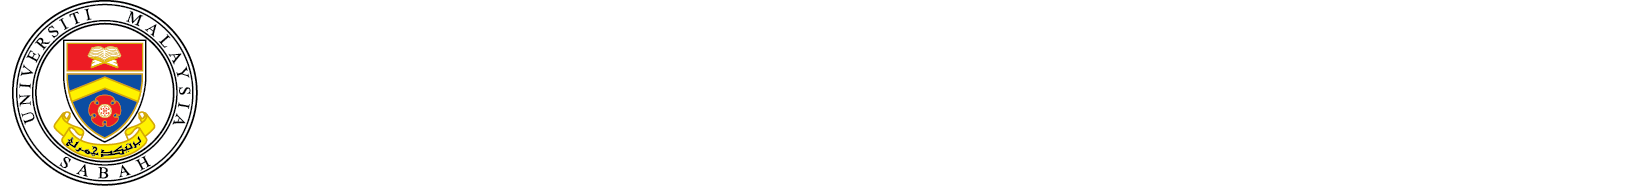 Pusat Pengurusan Strategik UMS